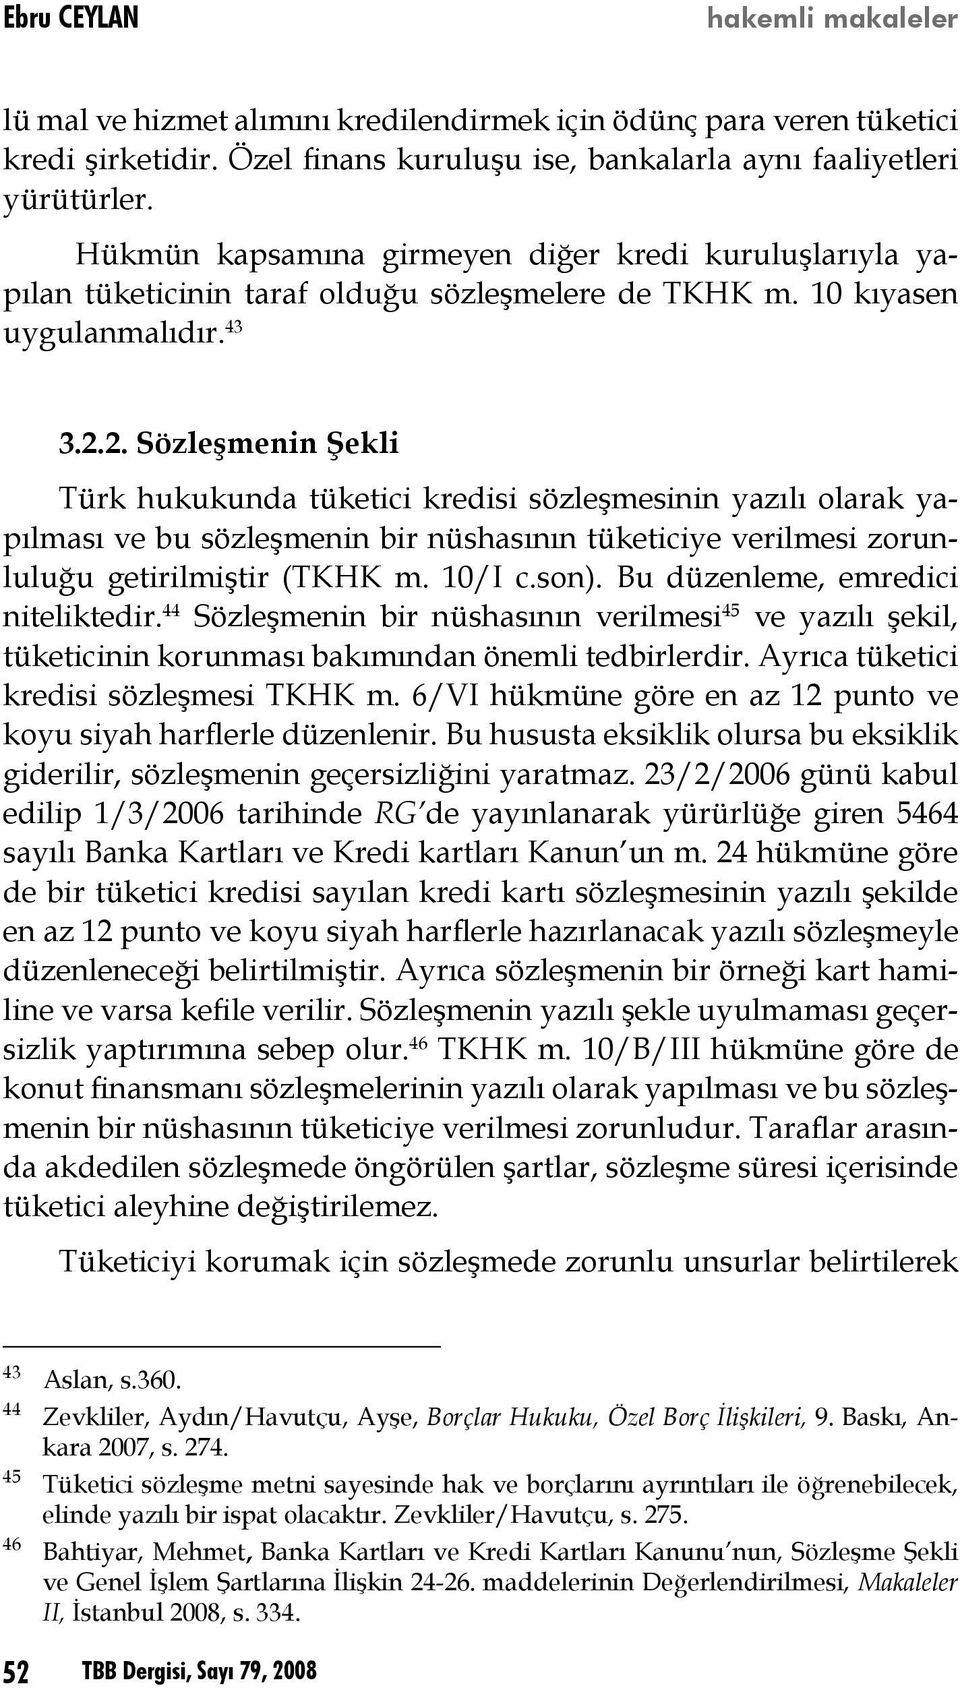 2. Sözleşmenin Şekli Türk hukukunda tüketici kredisi sözleşmesinin yazılı olarak yapılması ve bu sözleşmenin bir nüshasının tüketiciye verilmesi zorunluluğu getirilmiştir (TKHK m. 10/I c.son).